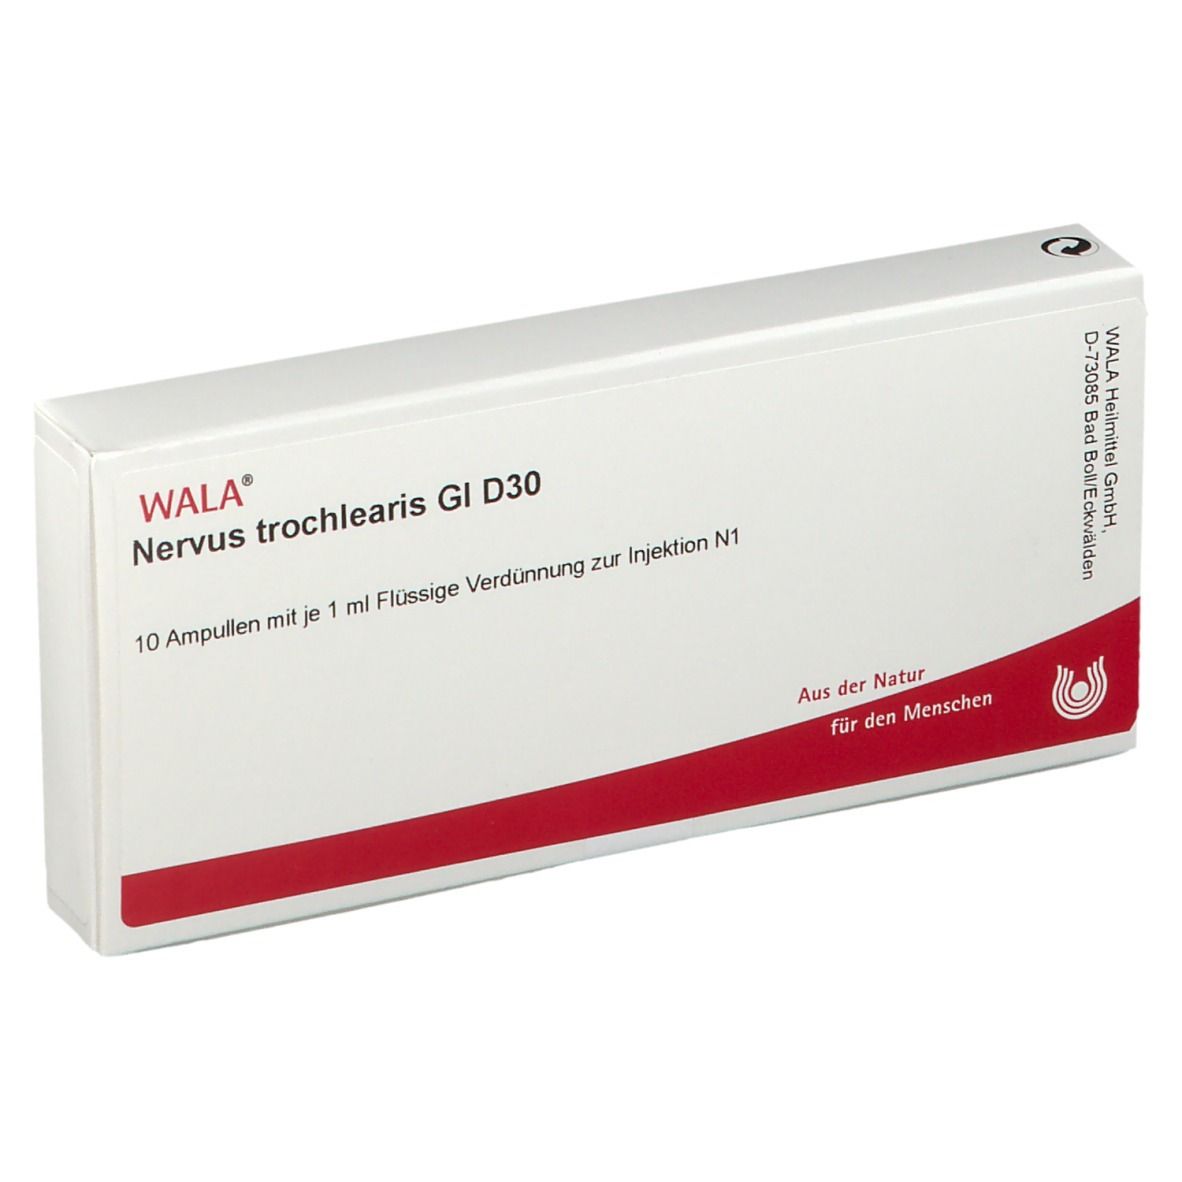 WALA® Nervus trochlearis Gl D 30